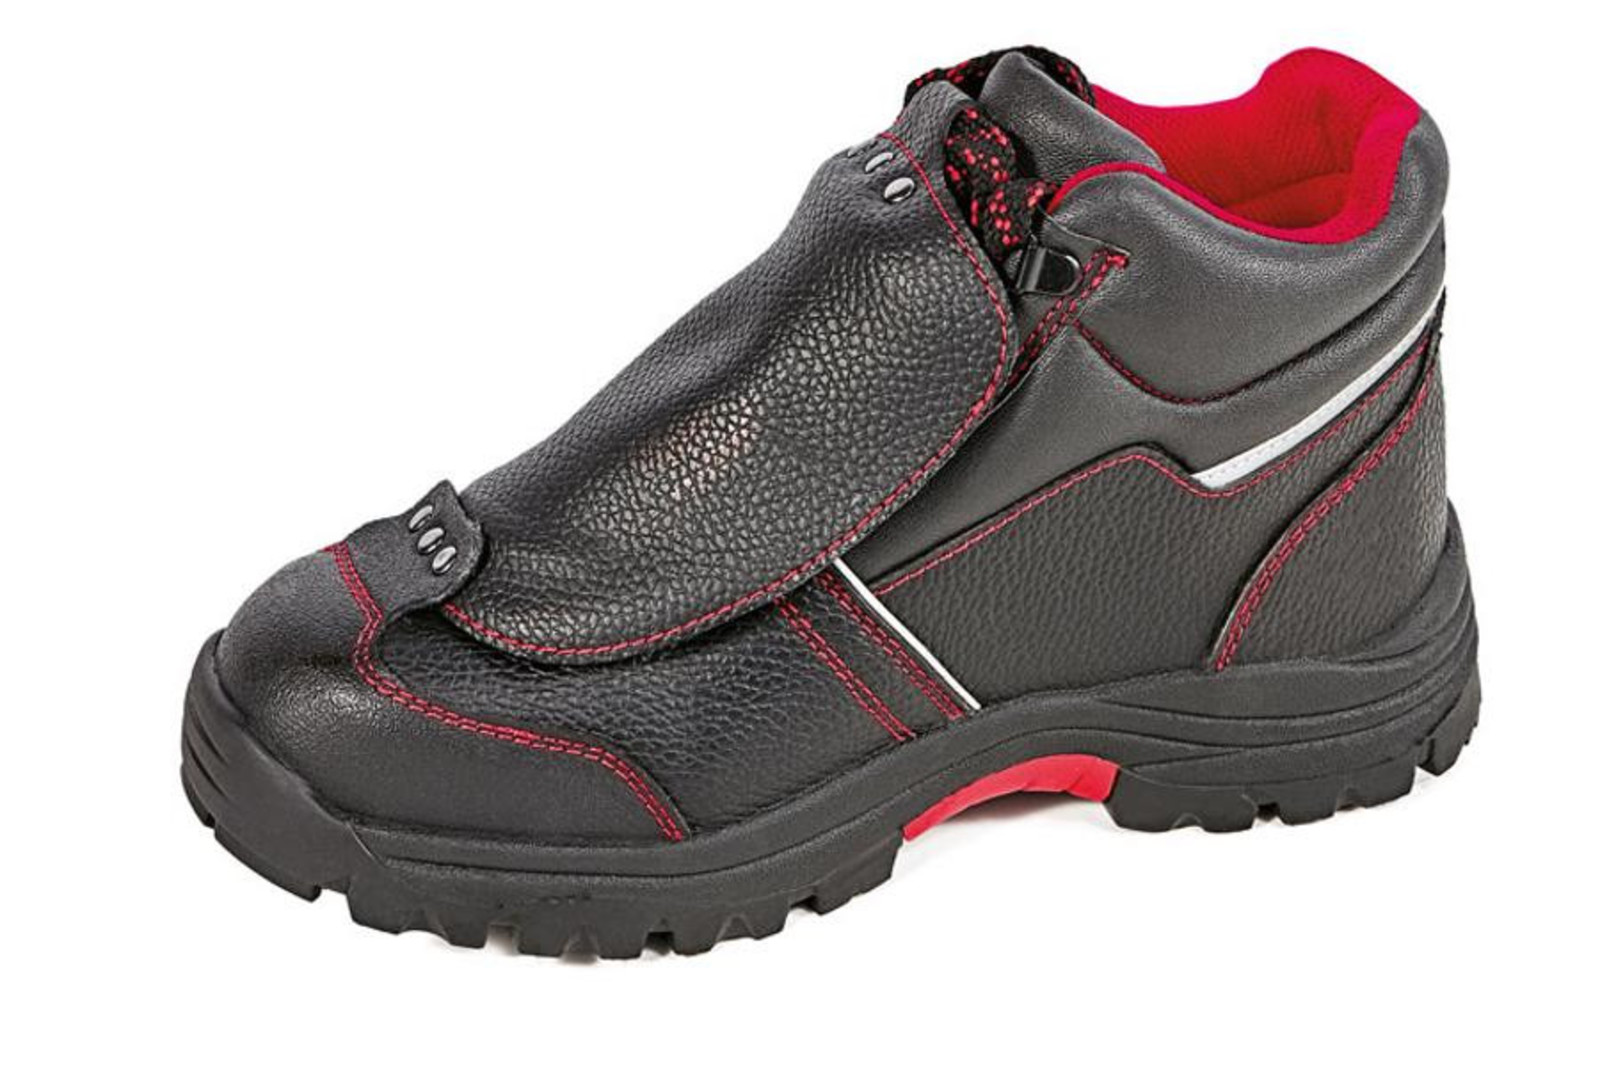 Bezpečnostná členková obuv Cerva Steeler Metatarsal S3 HRO M SRA  - veľkosť: 46, farba: čierna